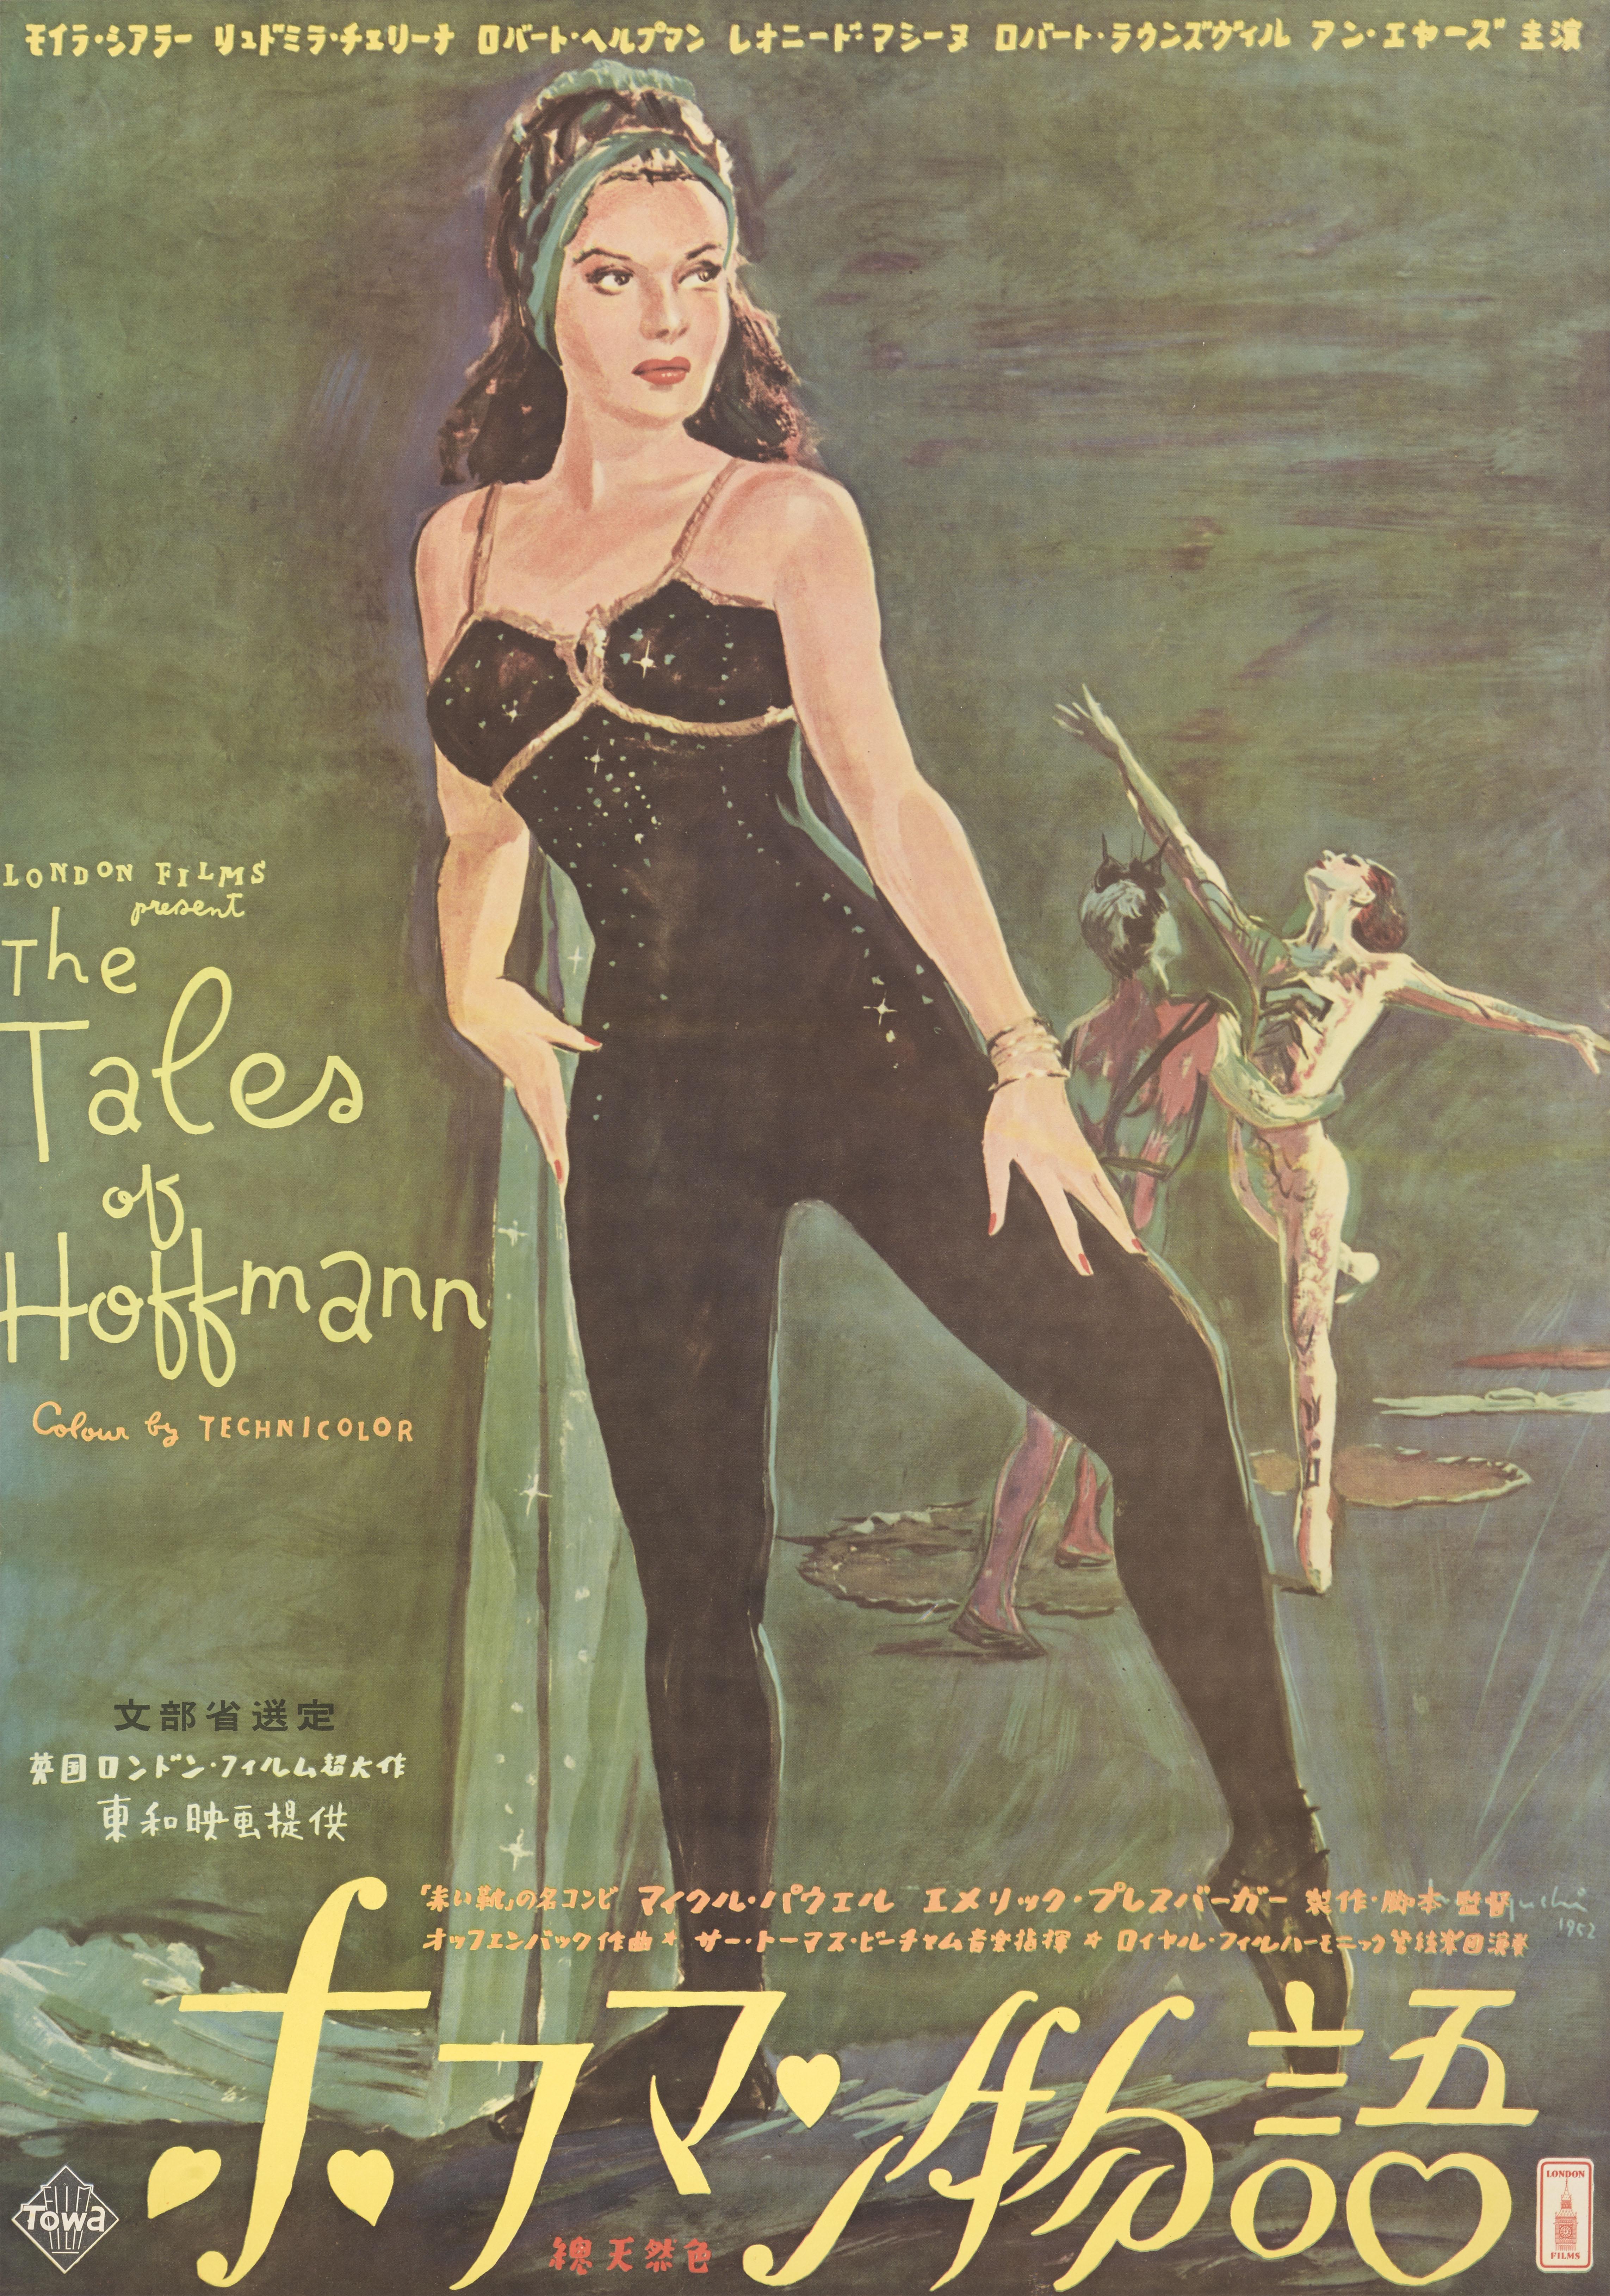 tales of hoffman film